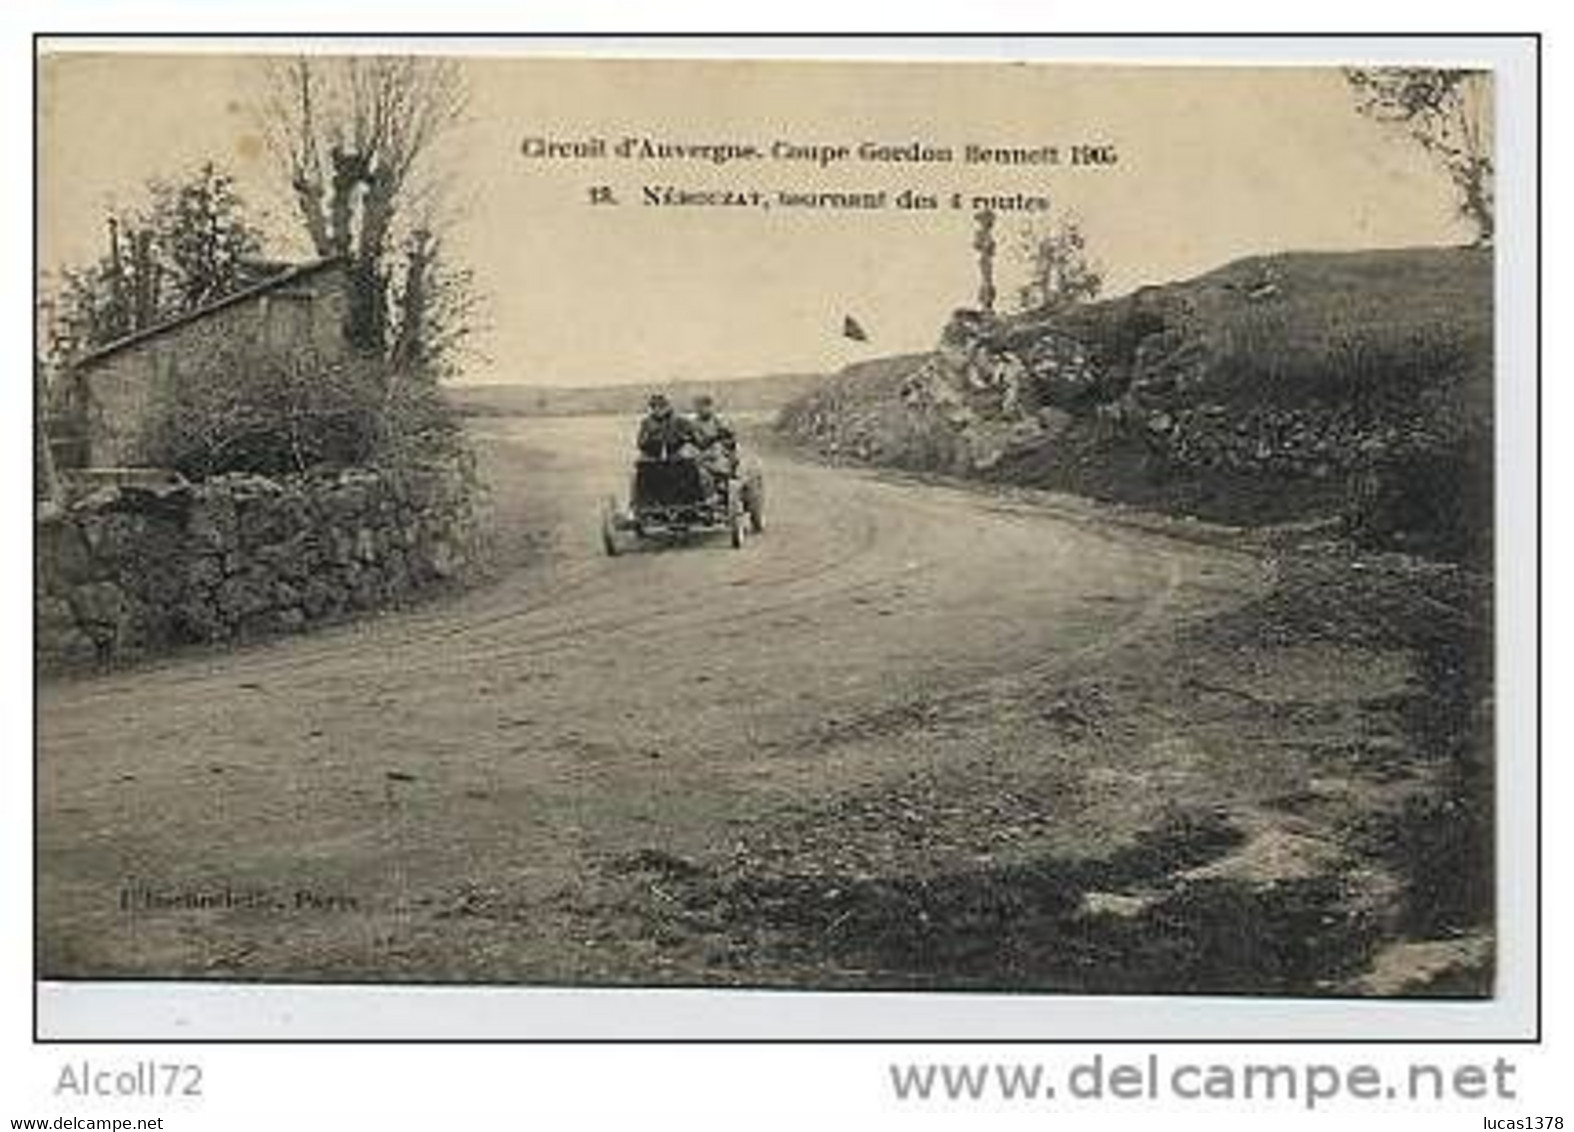 Circuit D'Auvergne.Coupe Gordon Bennet 1905.18.Nébouzat,tournant Des 4 Routes - Rallyes